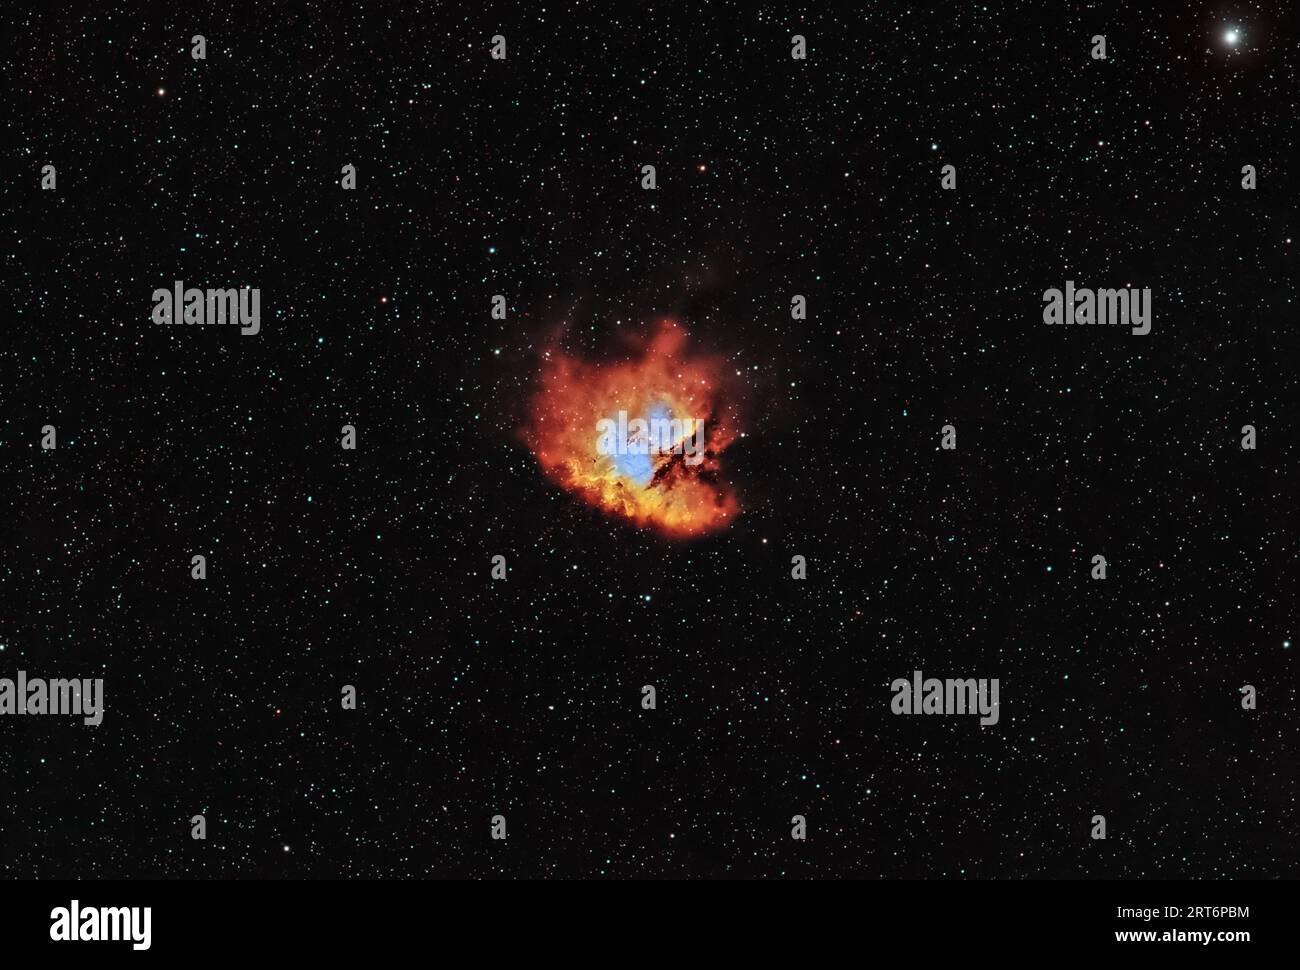 Ammira le vivaci sfumature della PAC Man Nebula, un capolavoro cosmico nel cuore della costellazione del Cigno. La sua forma distintiva cattura e rivela Foto Stock